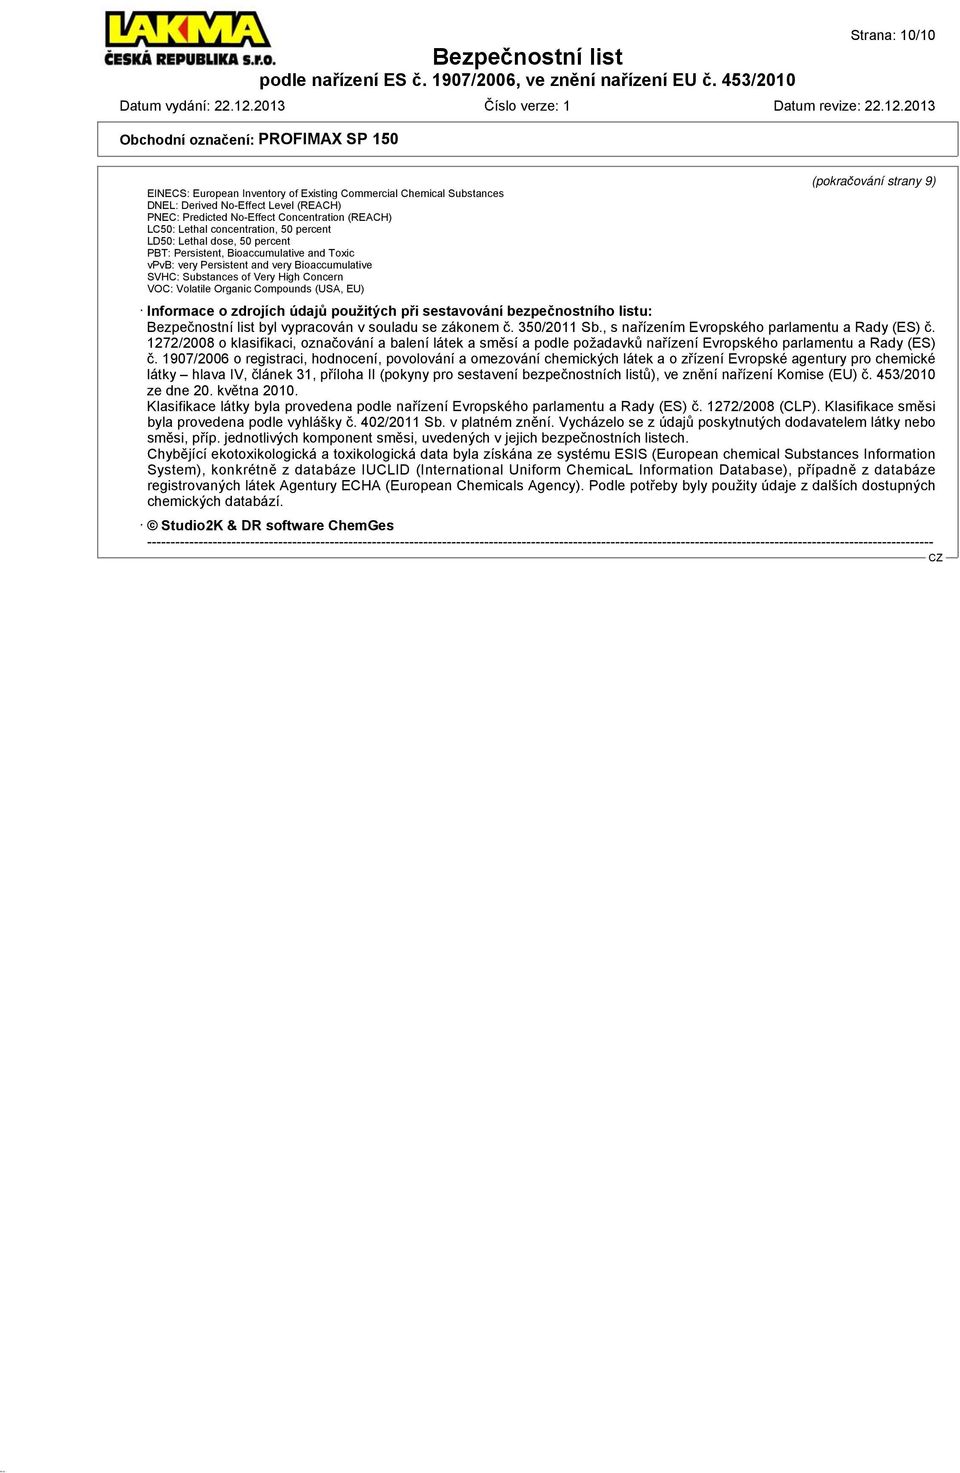 Volatile Organic Compounds (USA, EU) Informace o zdrojích údajů použitých při sestavování bezpečnostního listu: byl vypracován v souladu se zákonem č. 350/2011 Sb.